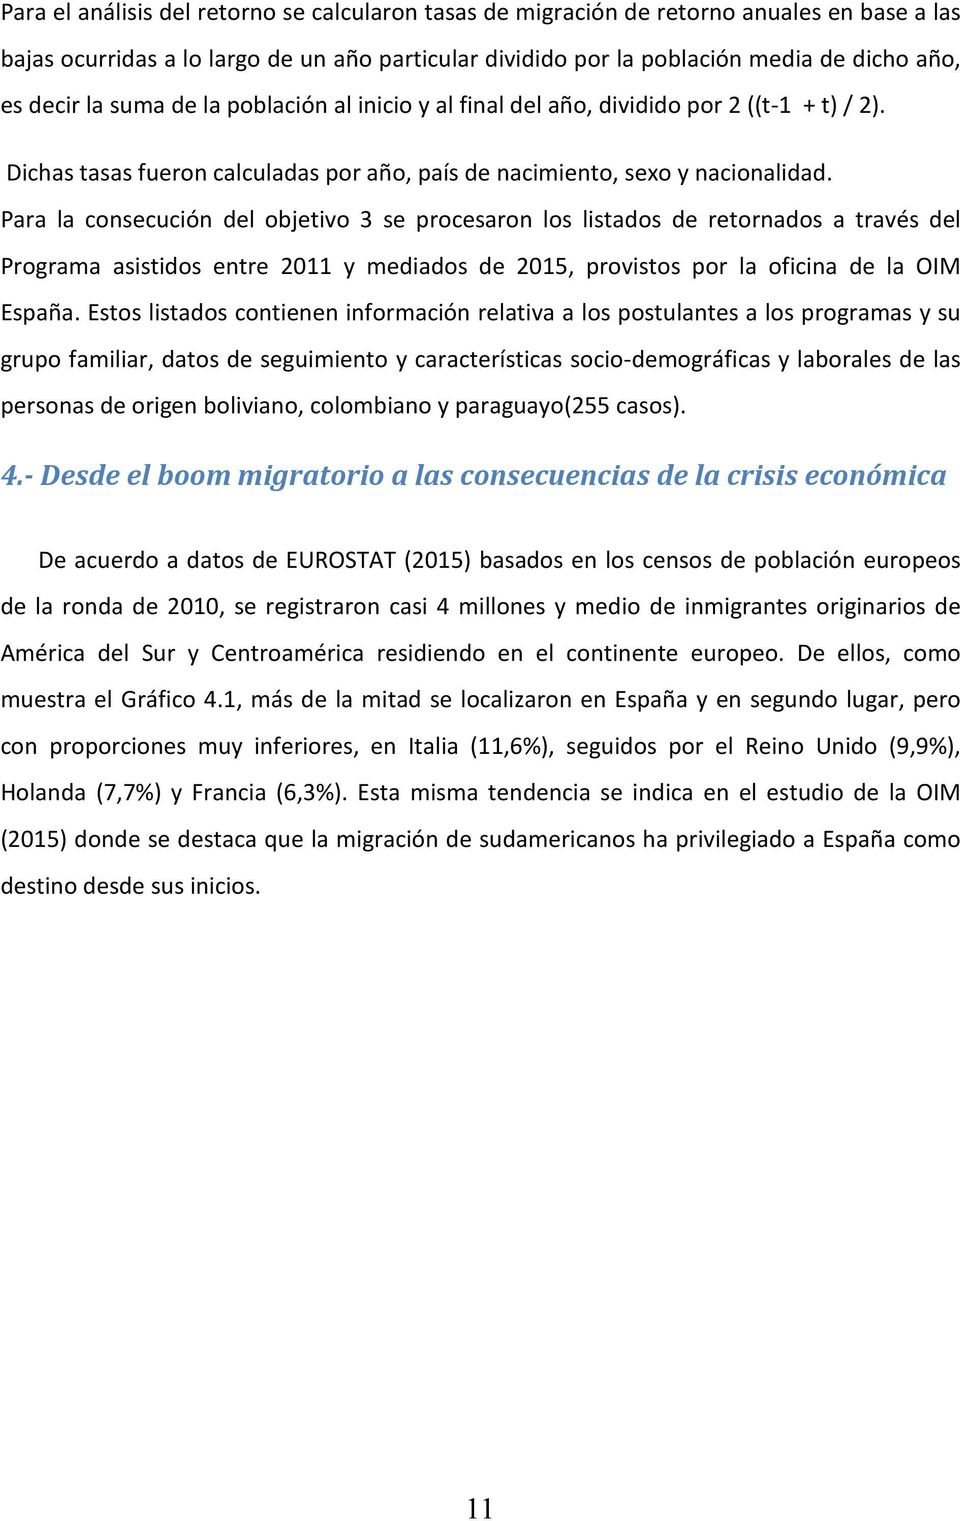 Para la consecución del objetivo 3 se procesaron los listados de retornados a través del Programa asistidos entre 2011 y mediados de 2015, provistos por la oficina de la OIM España.